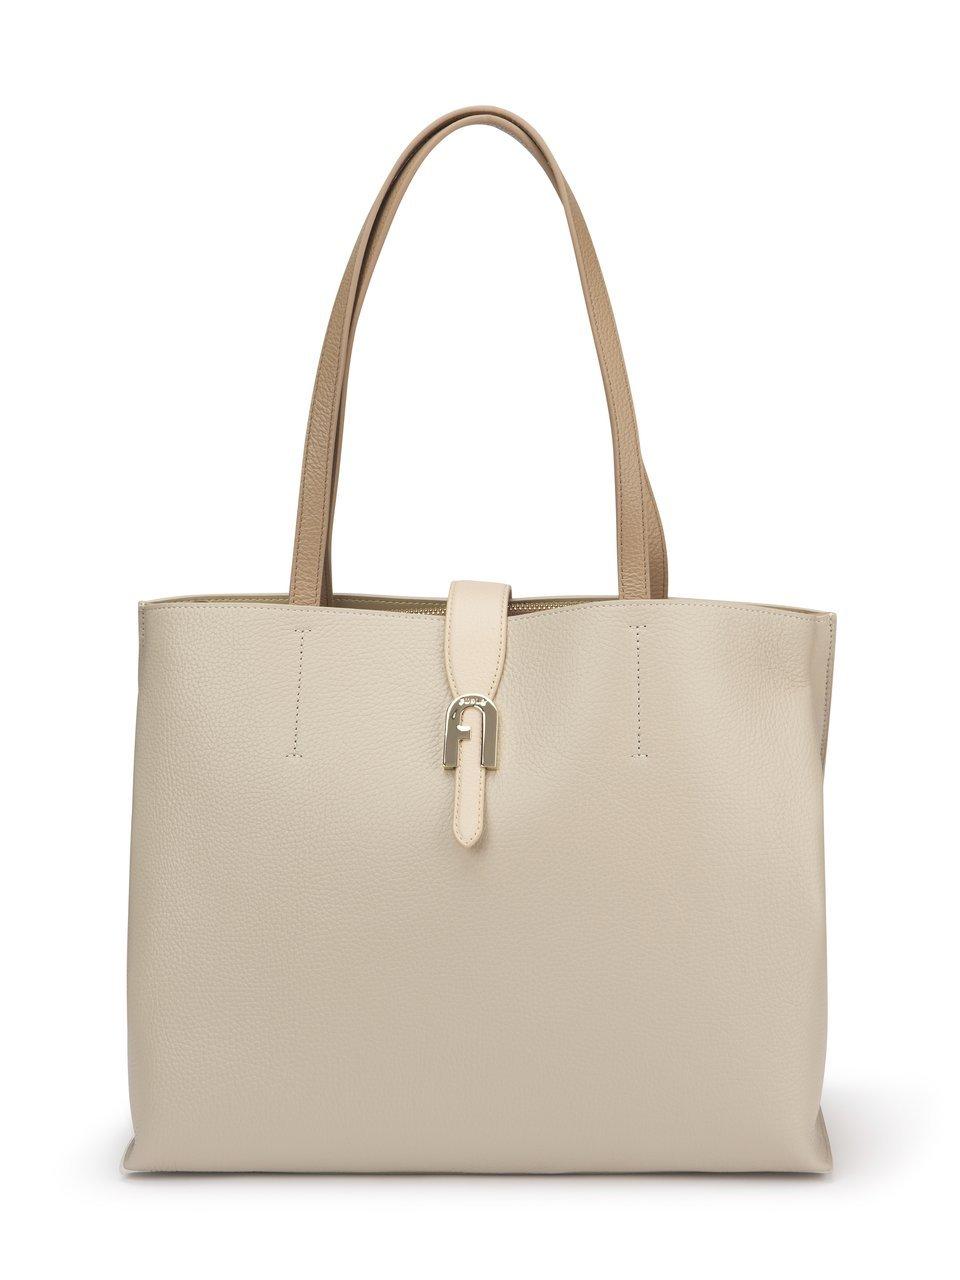 Image of Shopper bag Sofia Furla beige